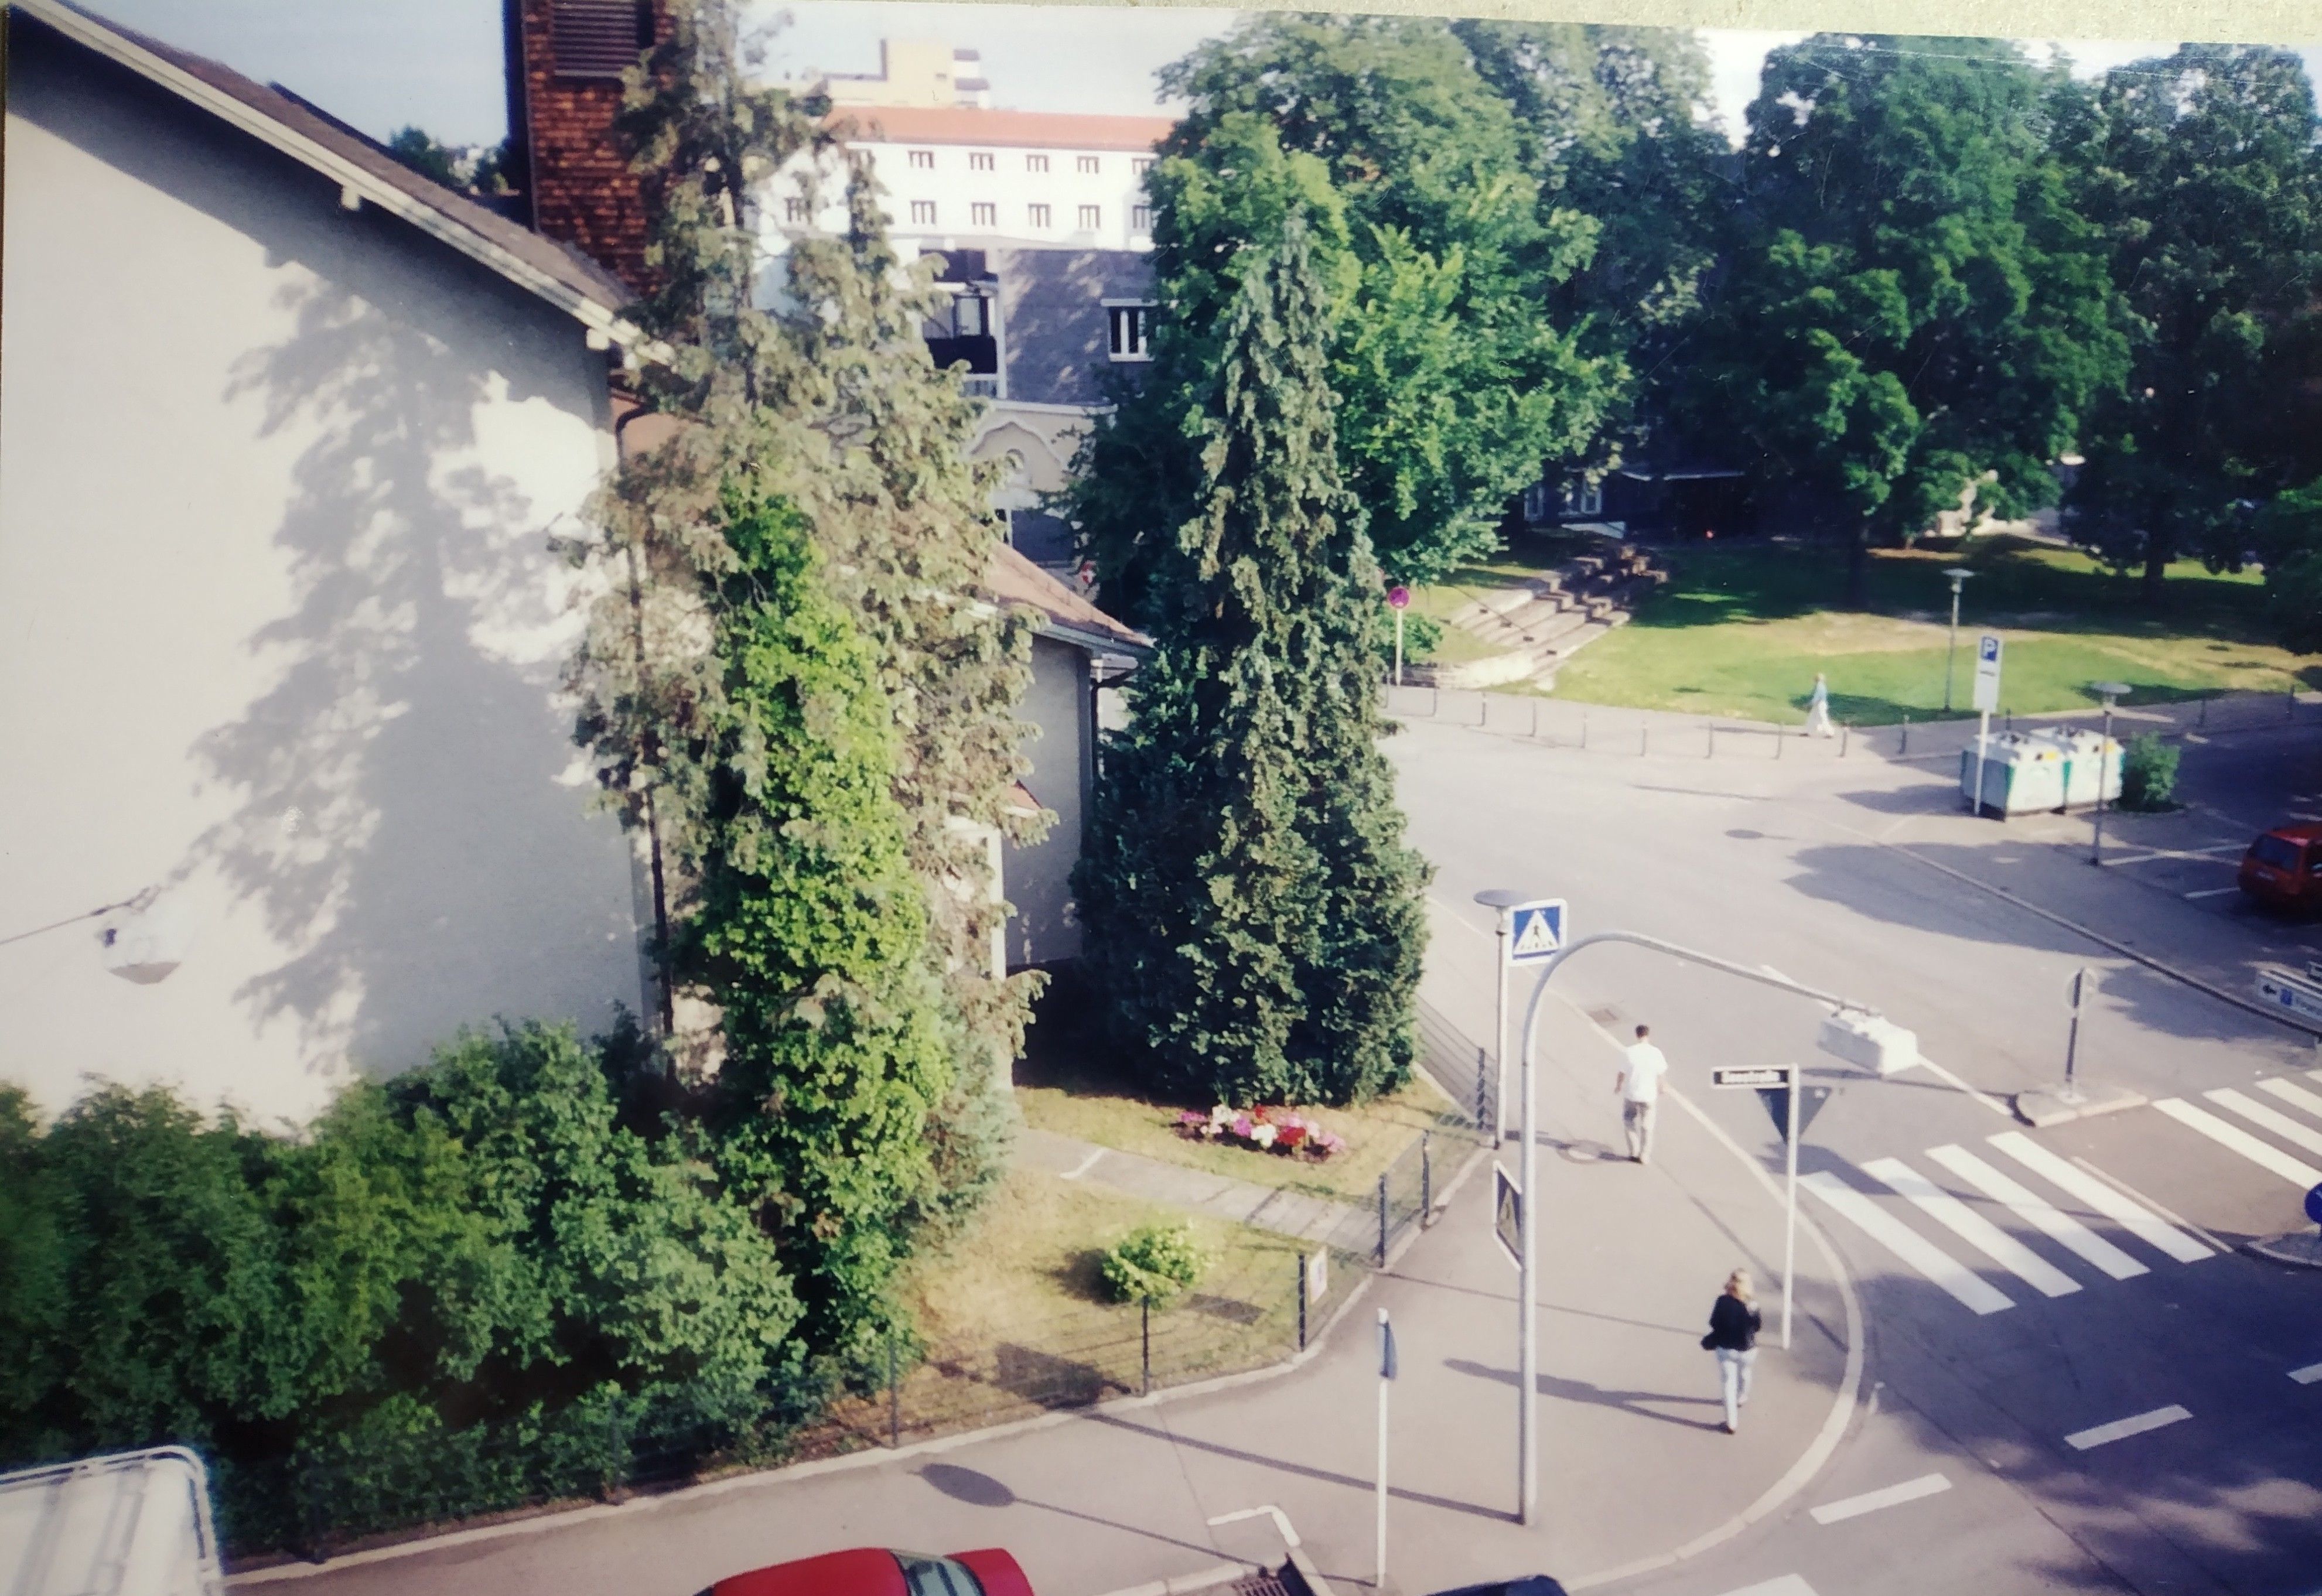 Tubingen July 2002